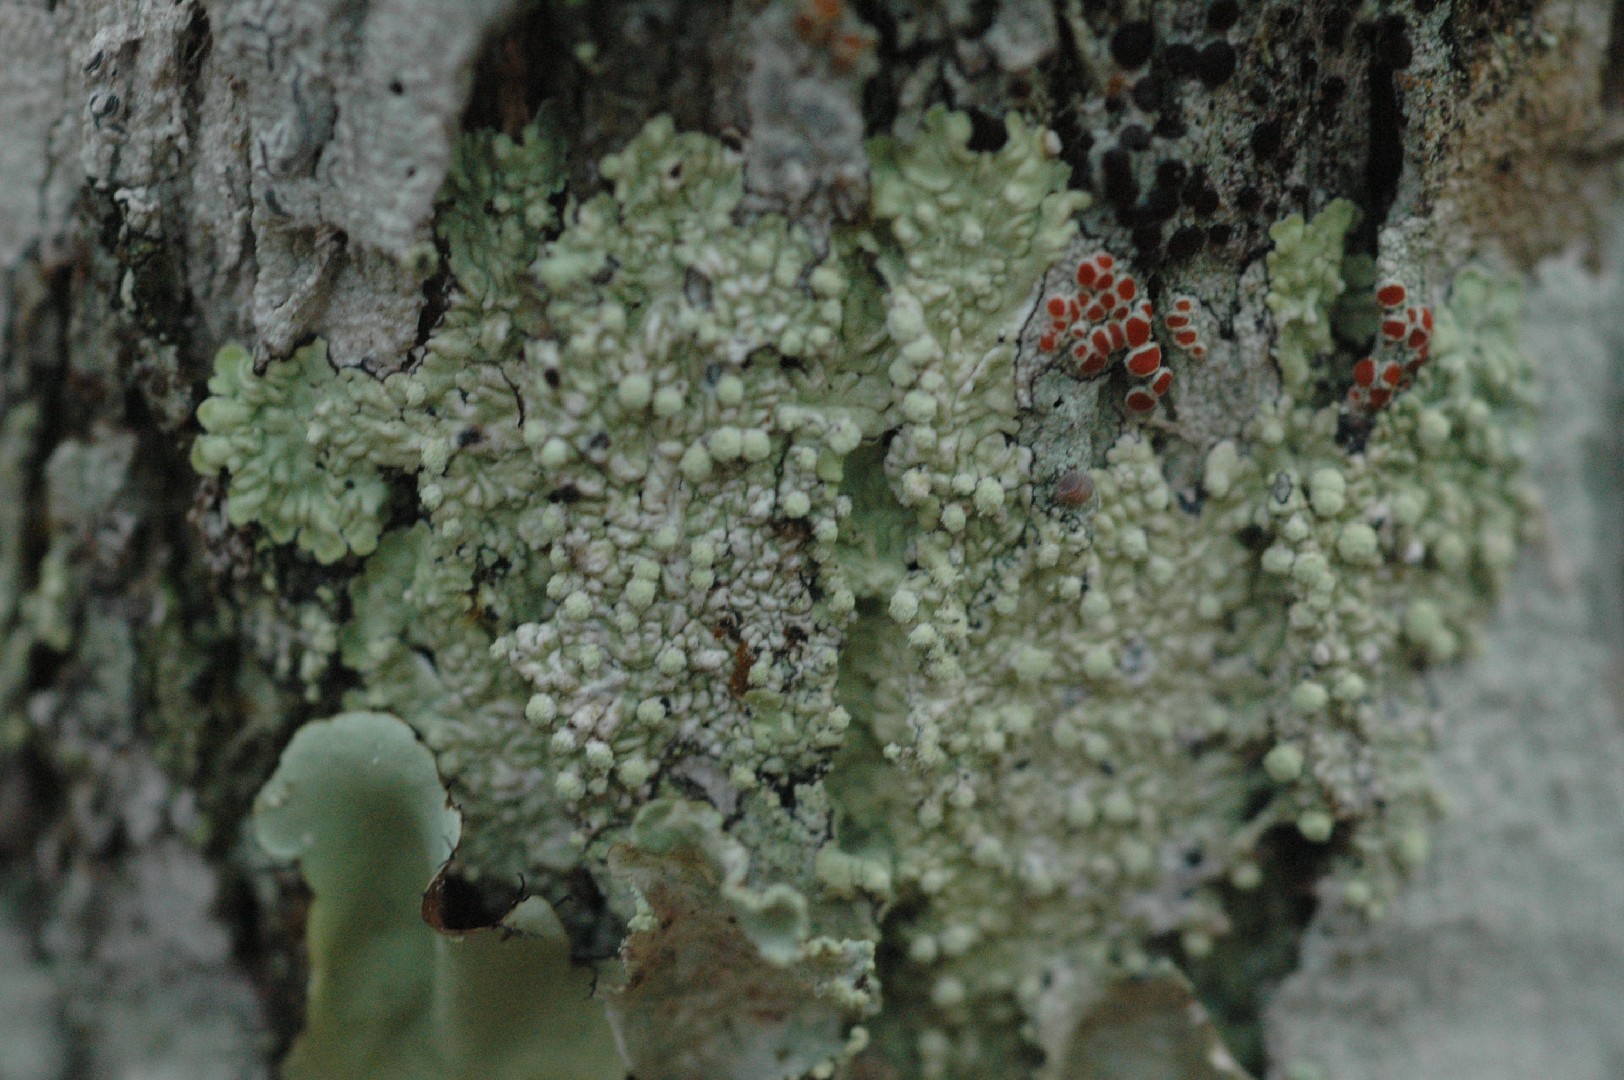 Dirinaria lichen